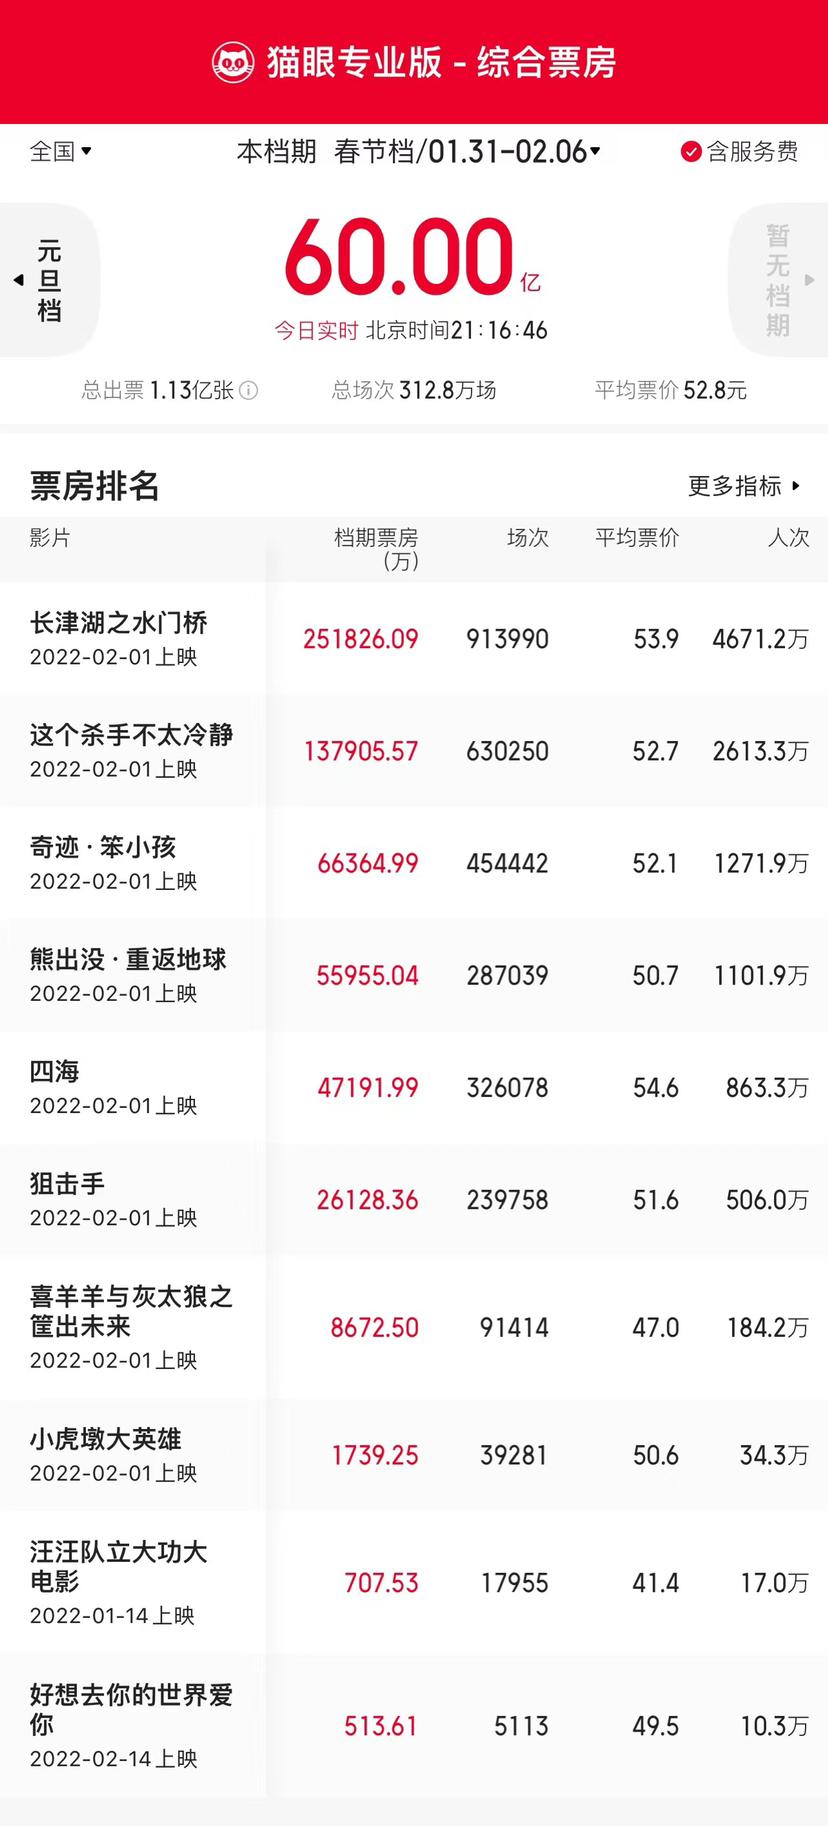 春节档总票房破60亿 刷新中国影史大盘单周票房纪录